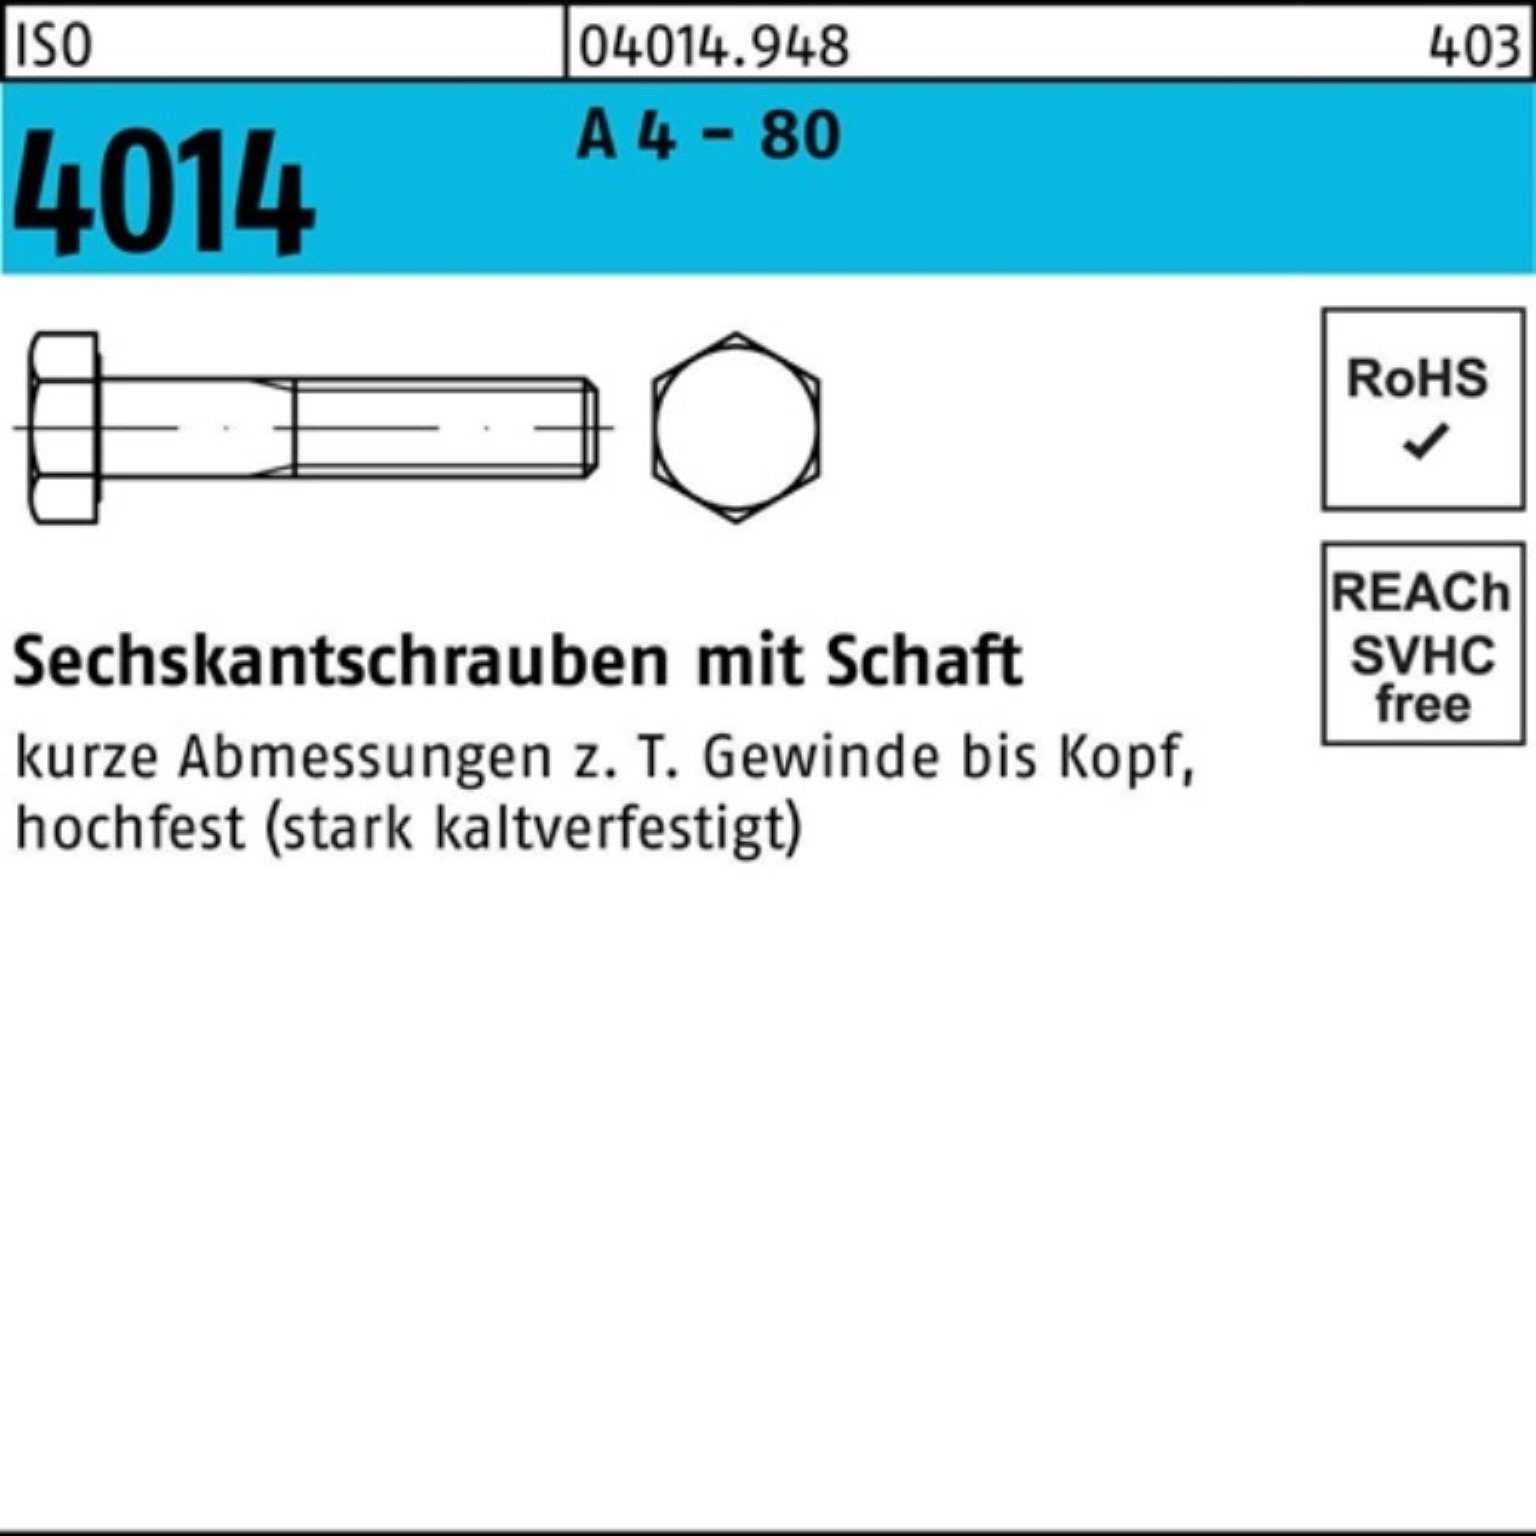 Pack Stüc 1 180 4014 Schaft 100er A Bufab Sechskantschraube - Sechskantschraube 4 80 M20x ISO